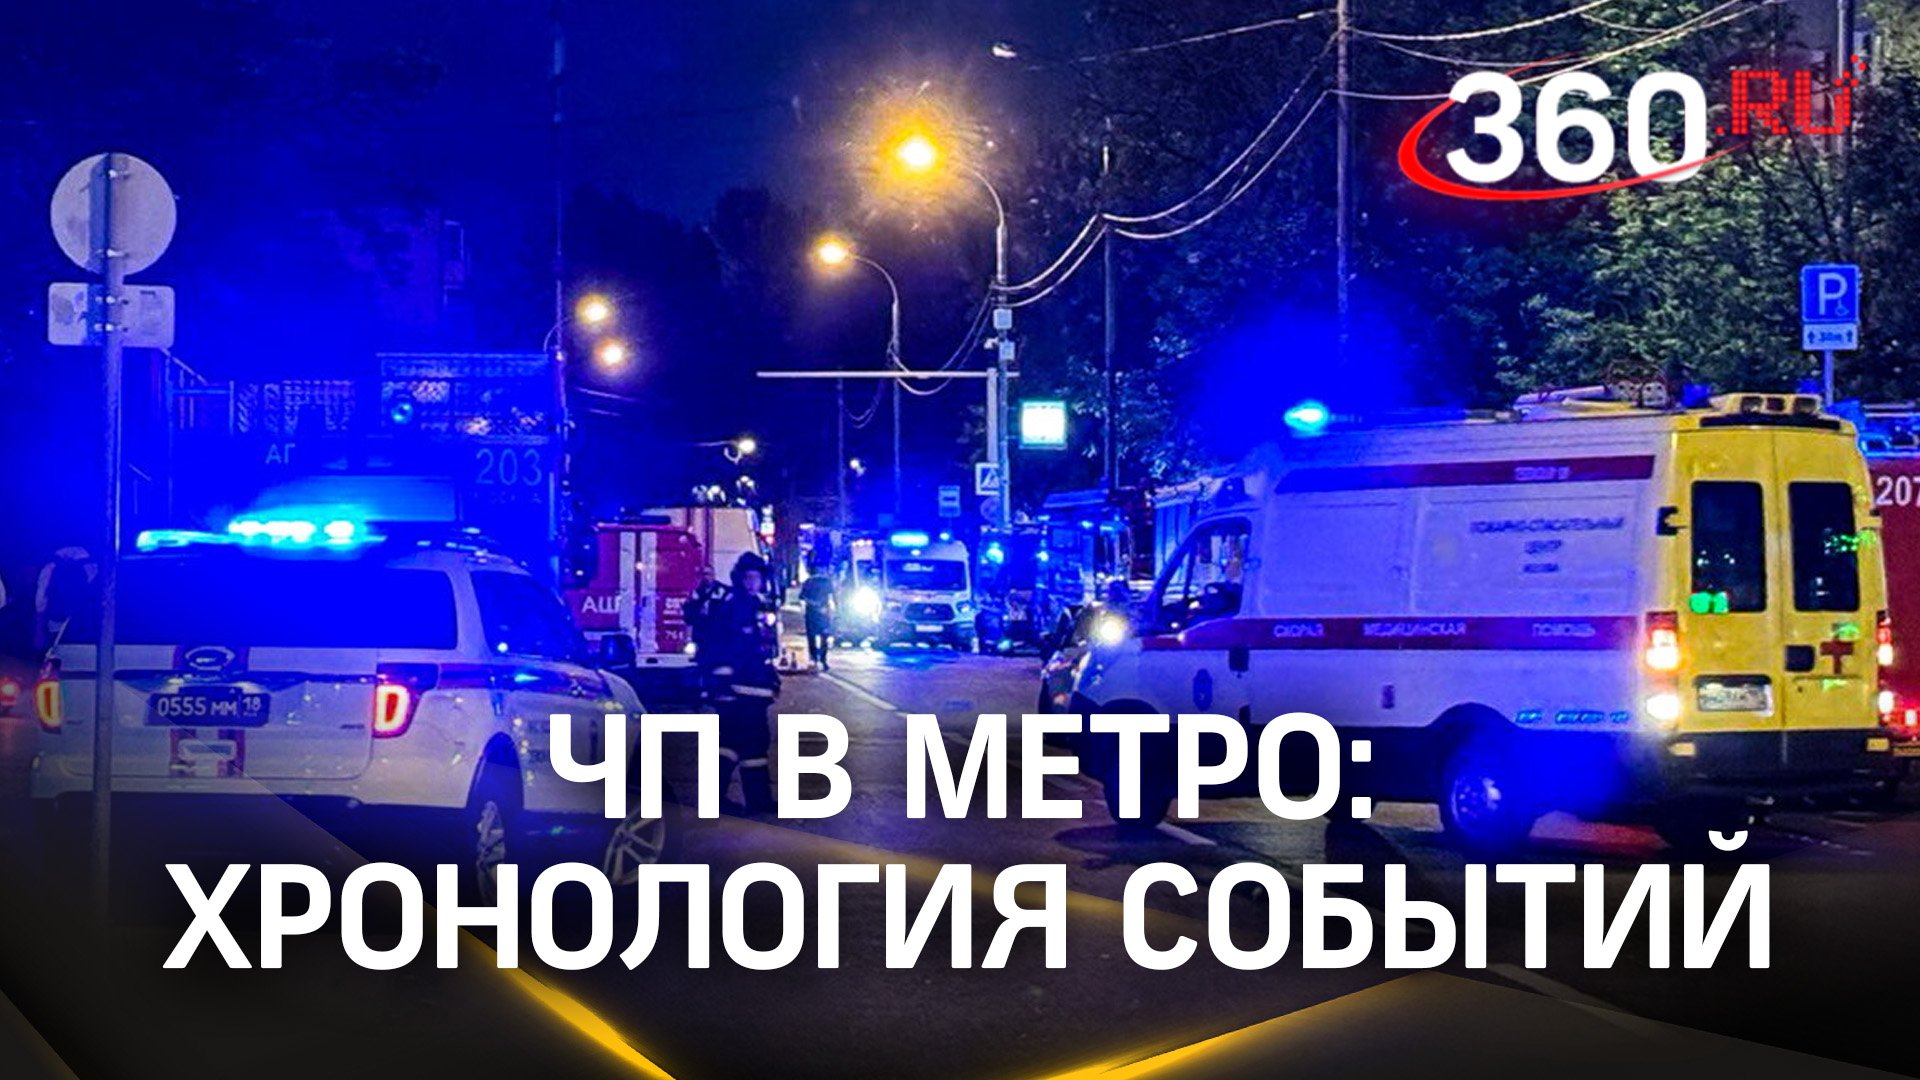 ЧП в метро Москвы: семь человек пострадали. Хронология событий